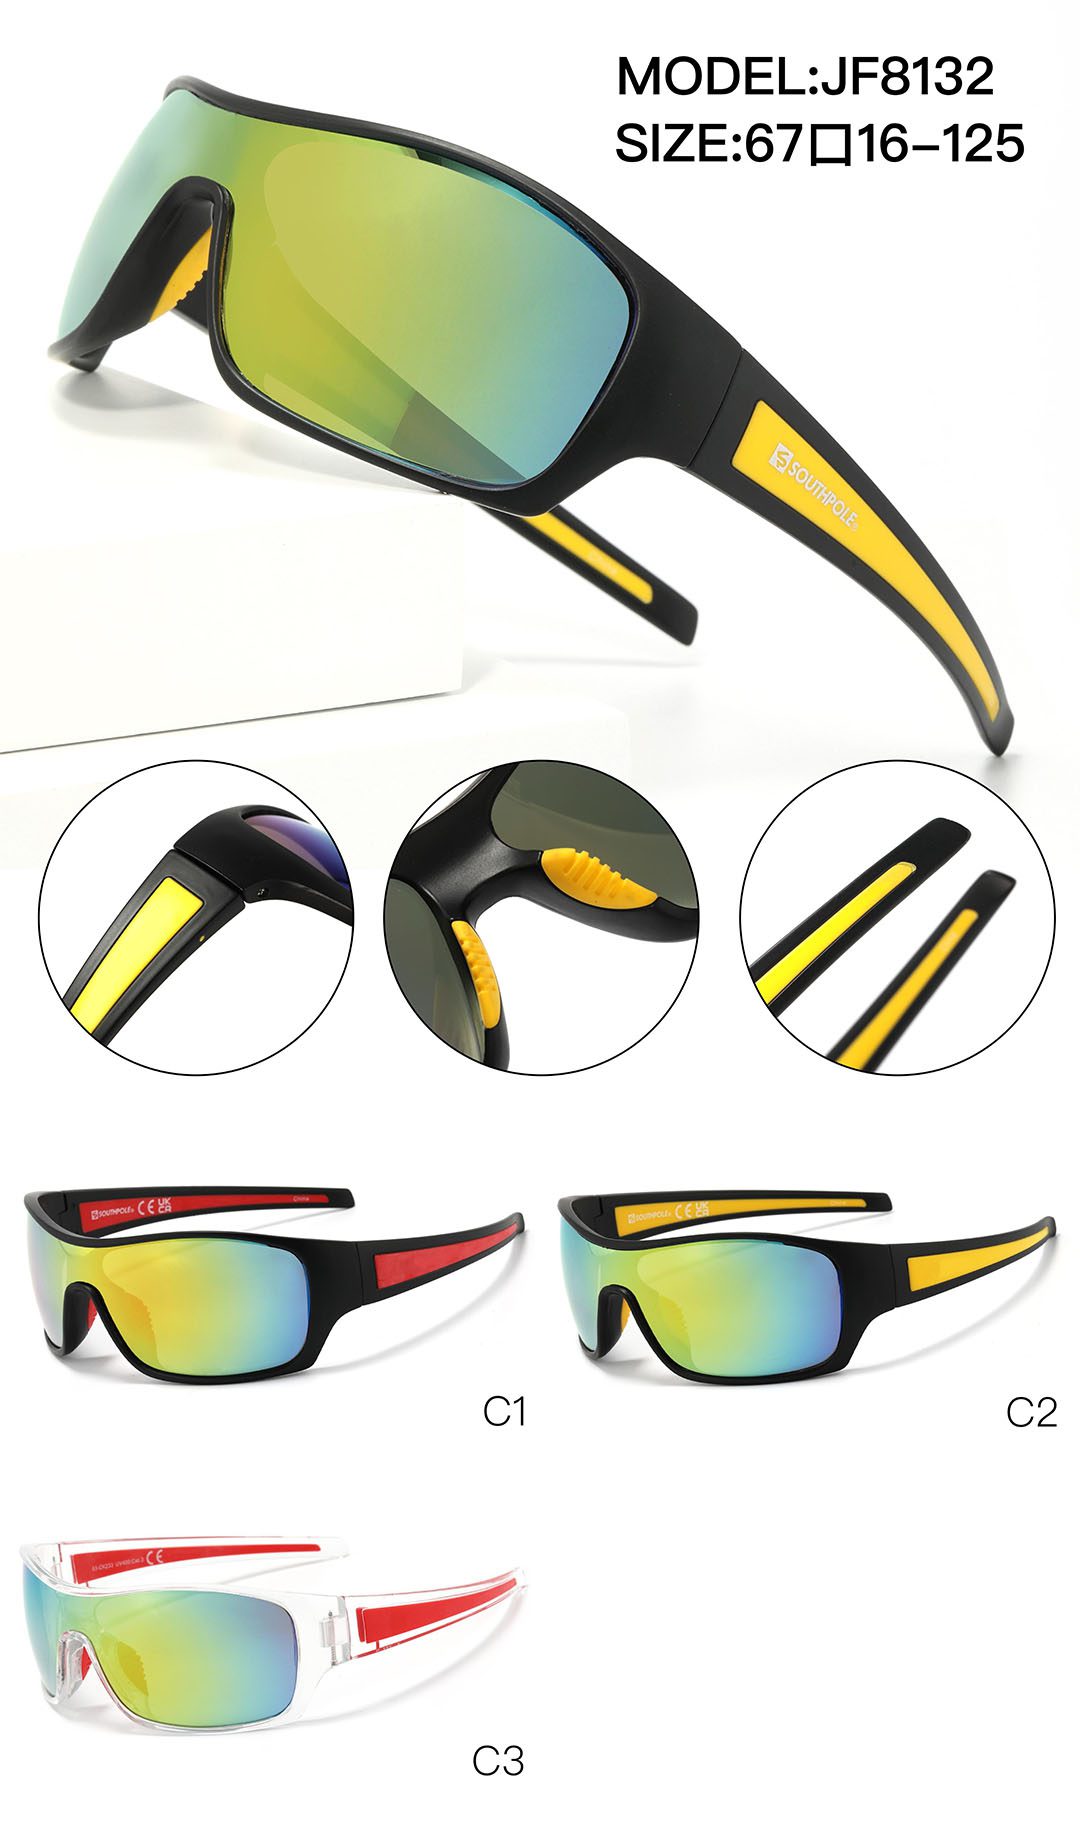 TR Sport Sunglasses Detail Shooting